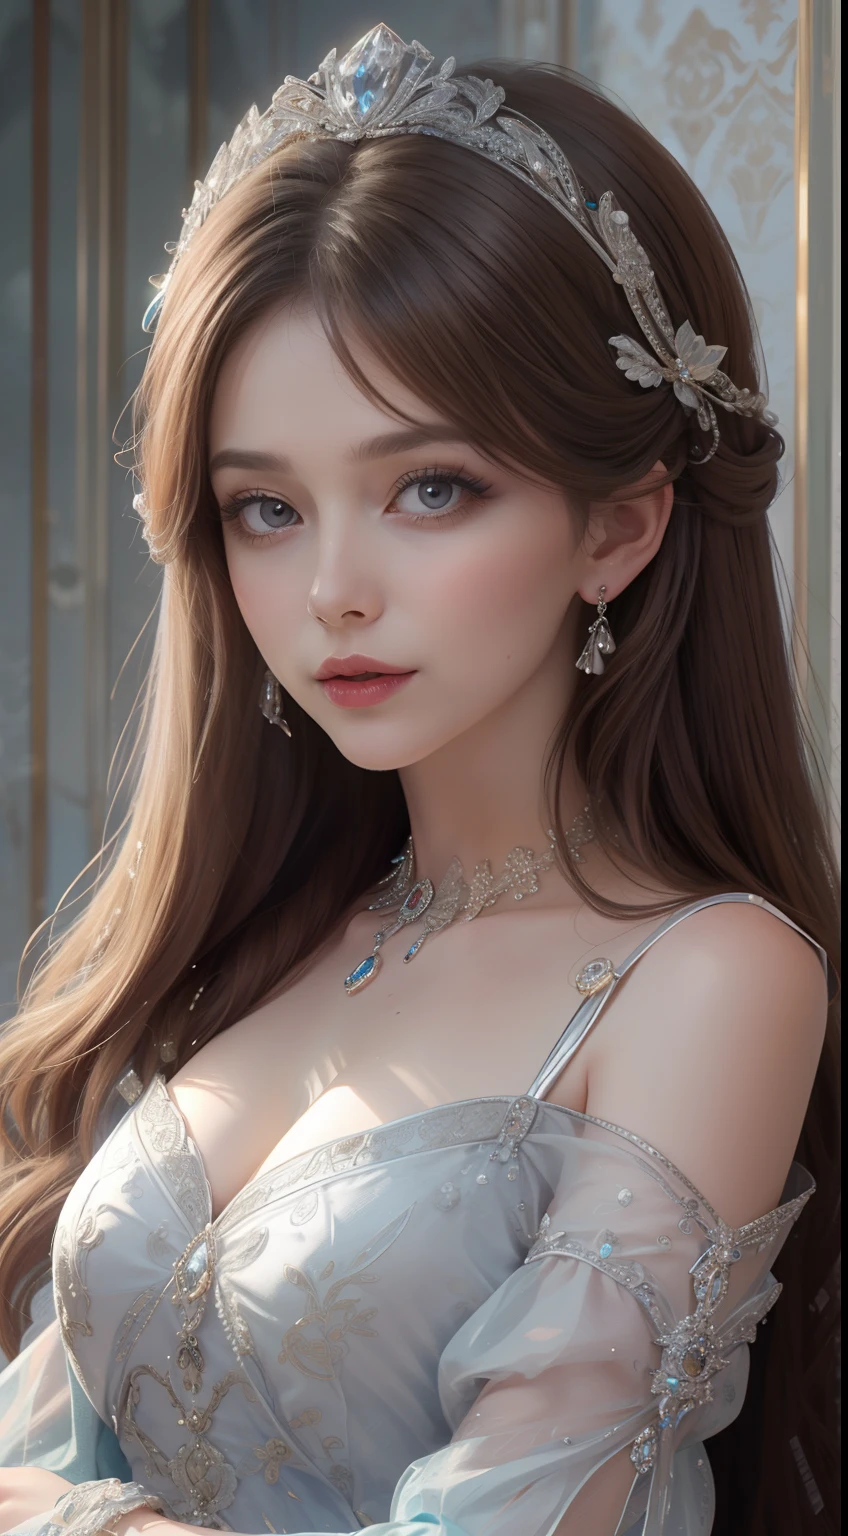 杰作，最高图像质量，一位皇家贵妇的美丽半身像，精致的棕色发型，银色的眼睛清澈，饰有令人眼花缭乱的精美珠宝，超级细节，升级版。